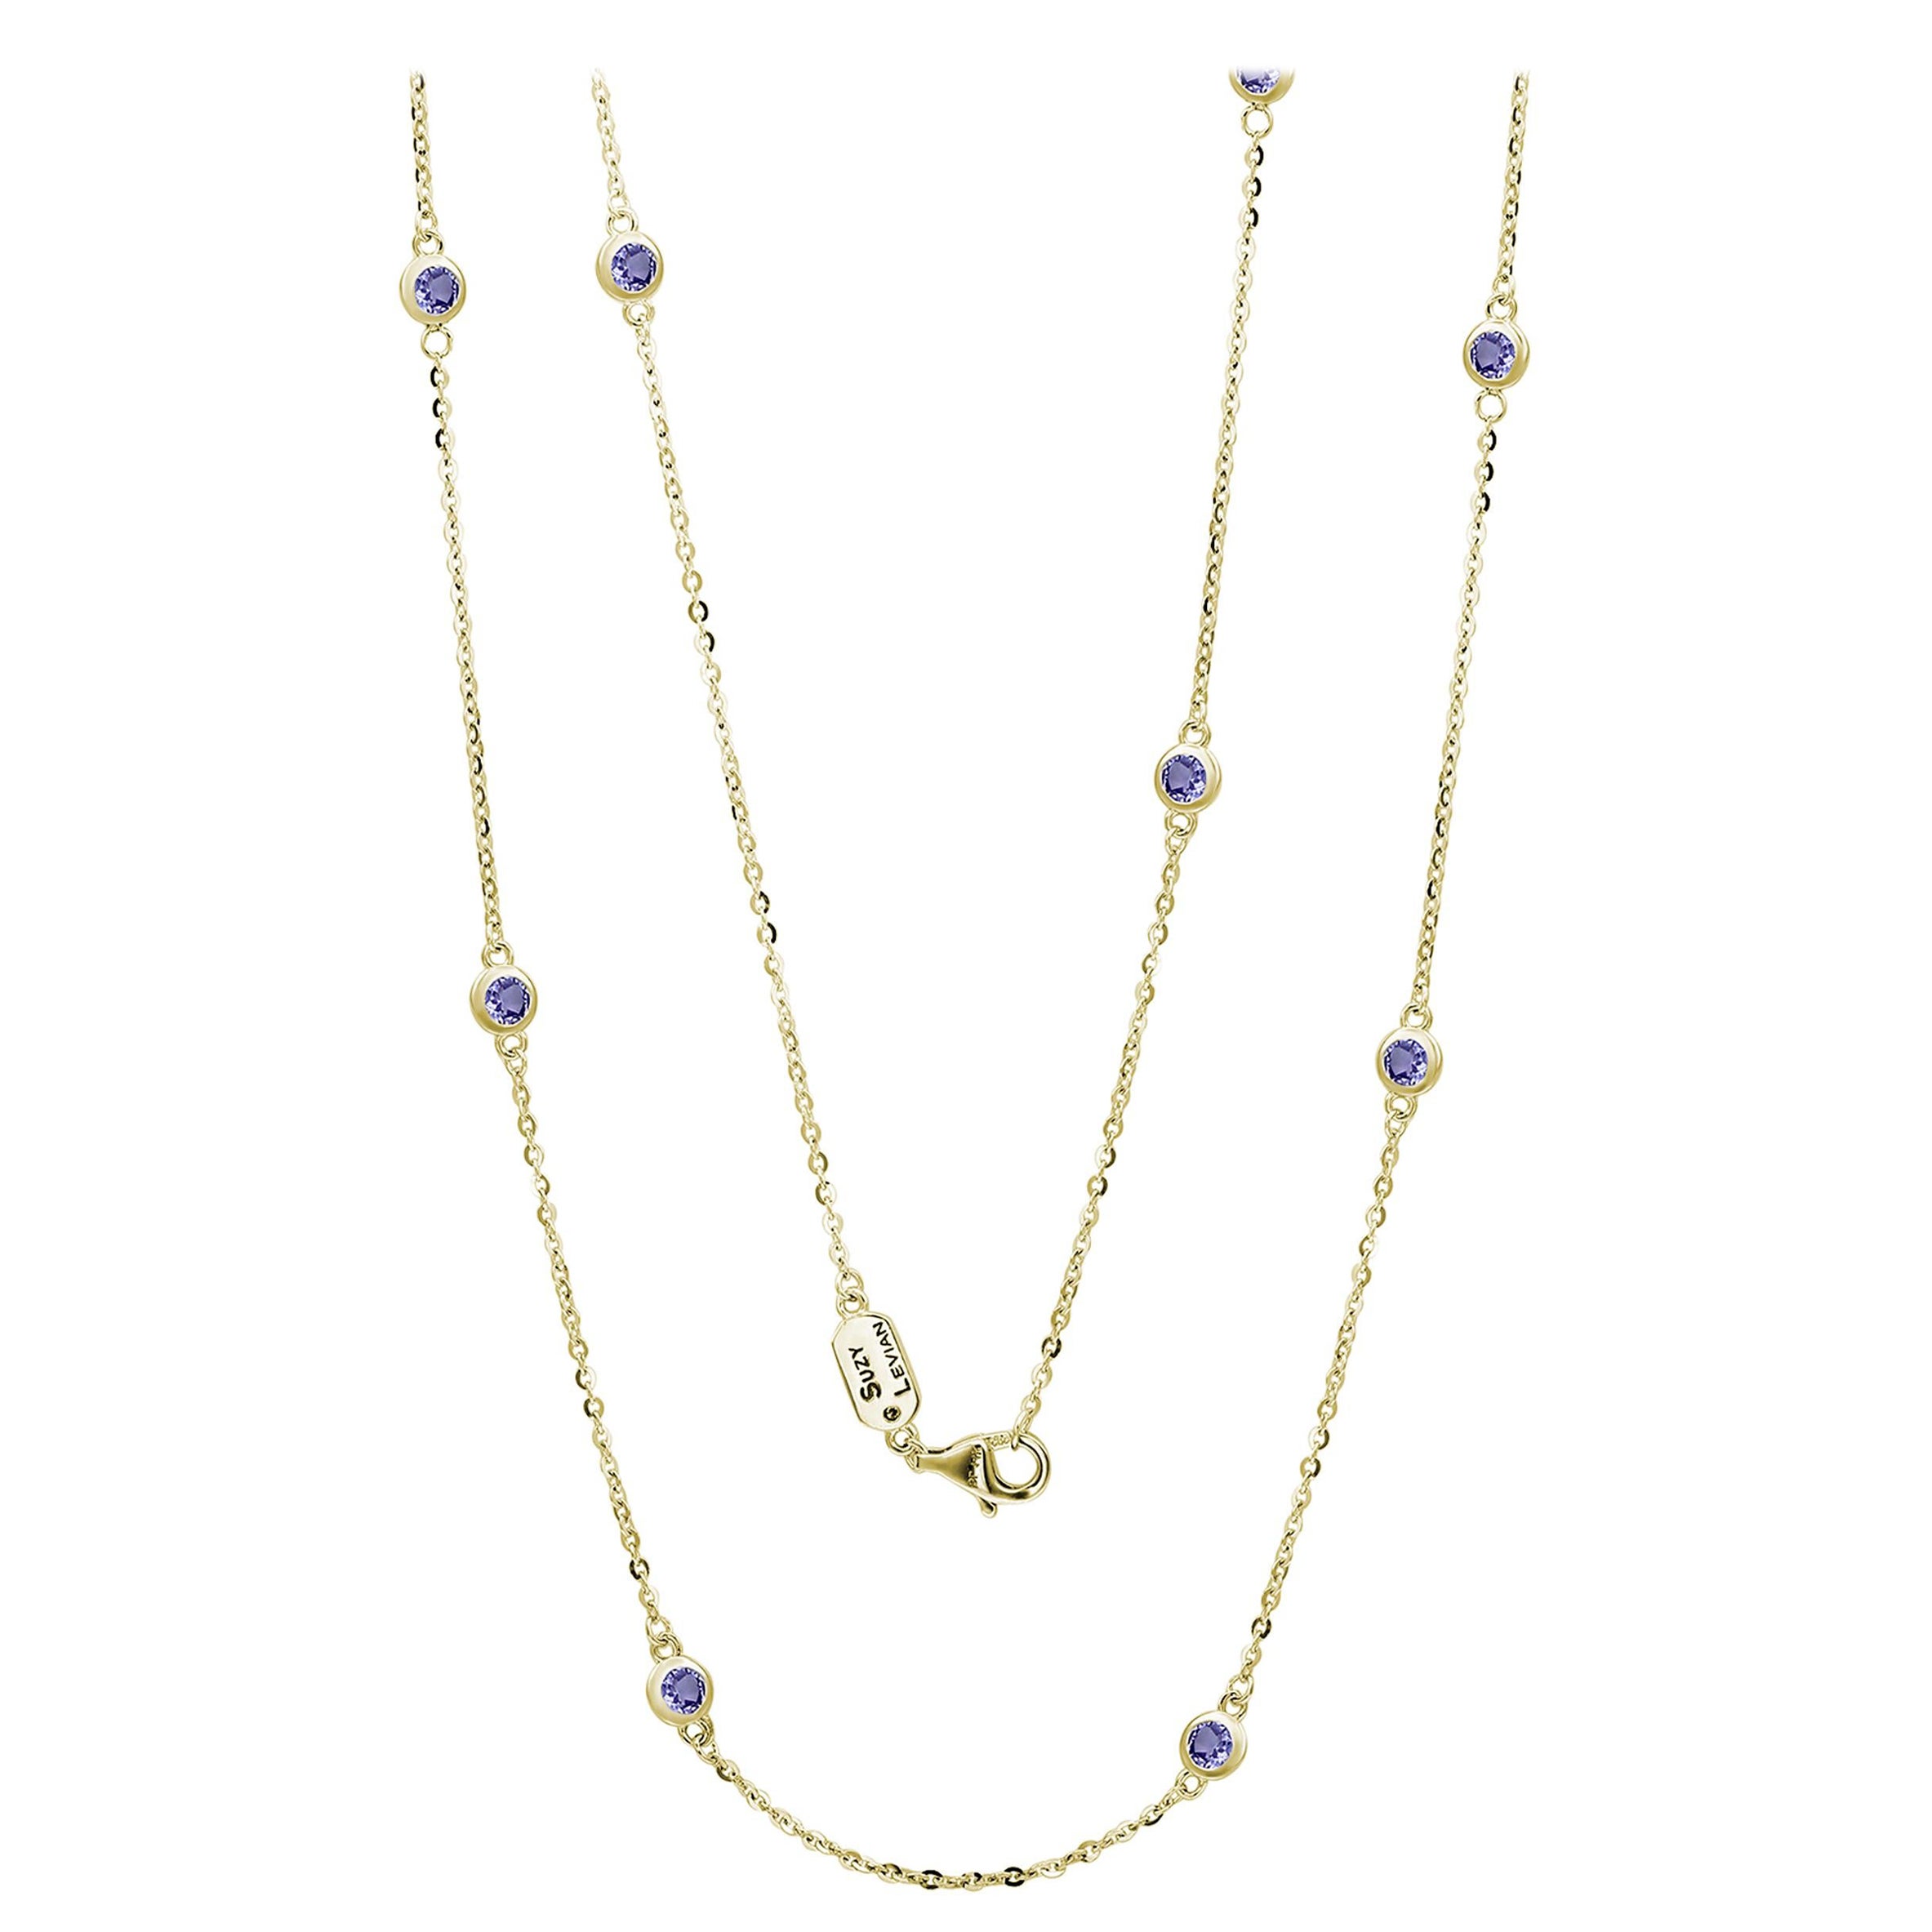 Suzy Levian Chain Necklaces